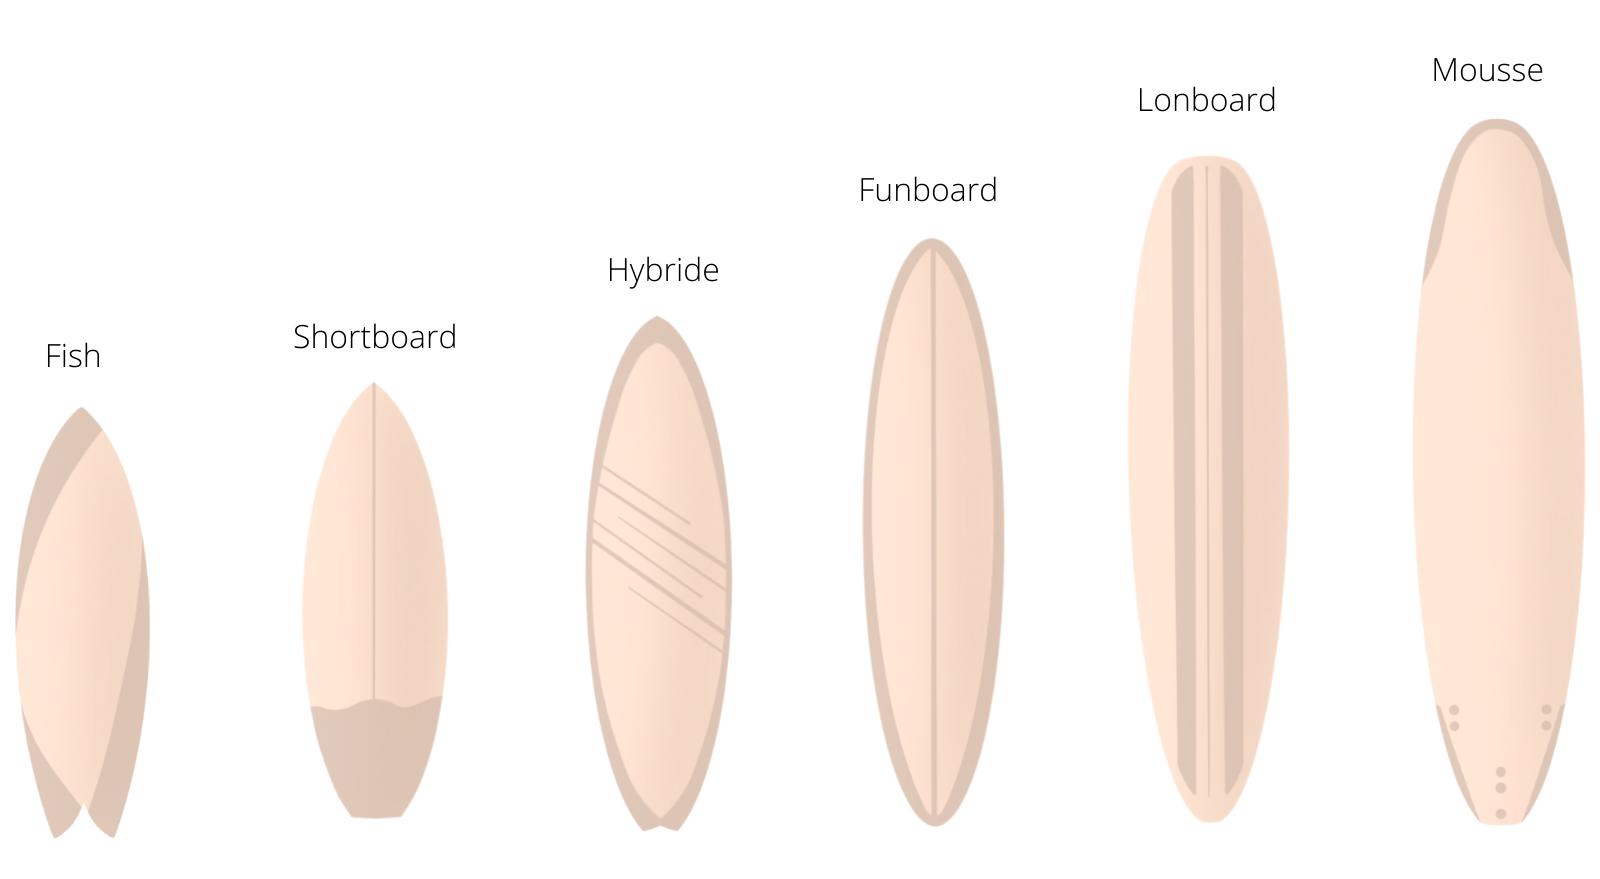 Les types de planches de surf